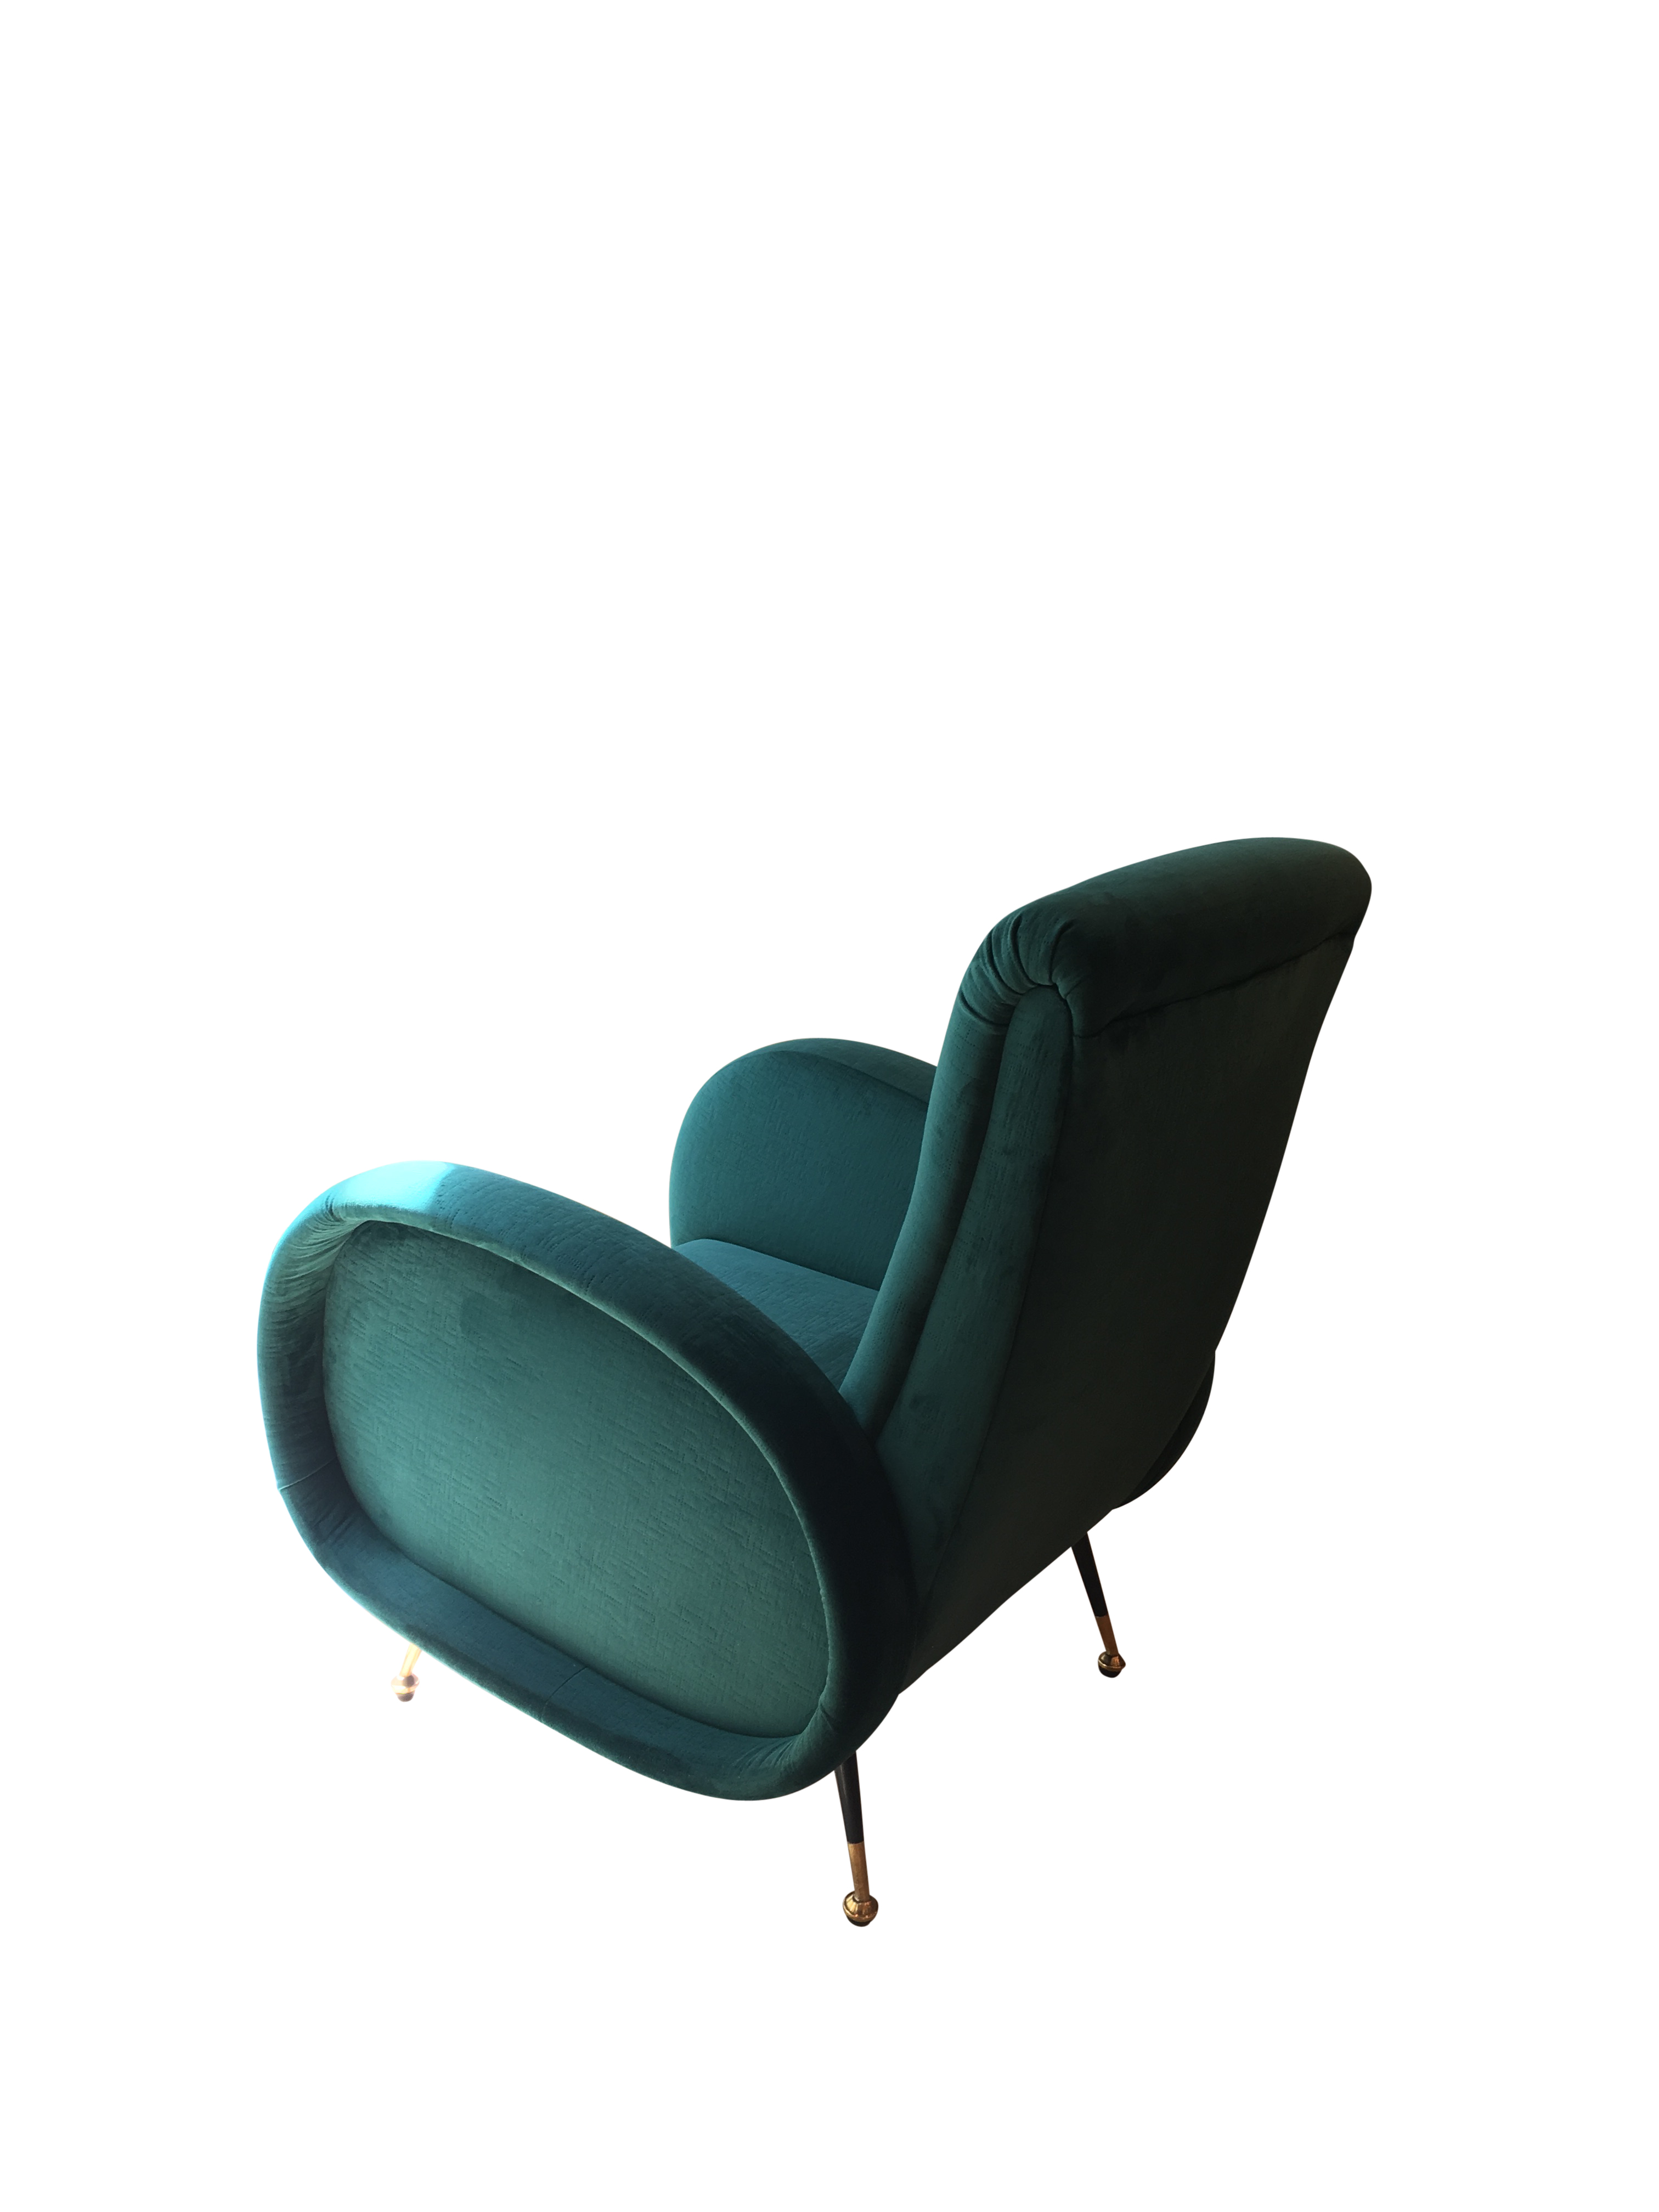 Armchair upholstered in Green Velvet